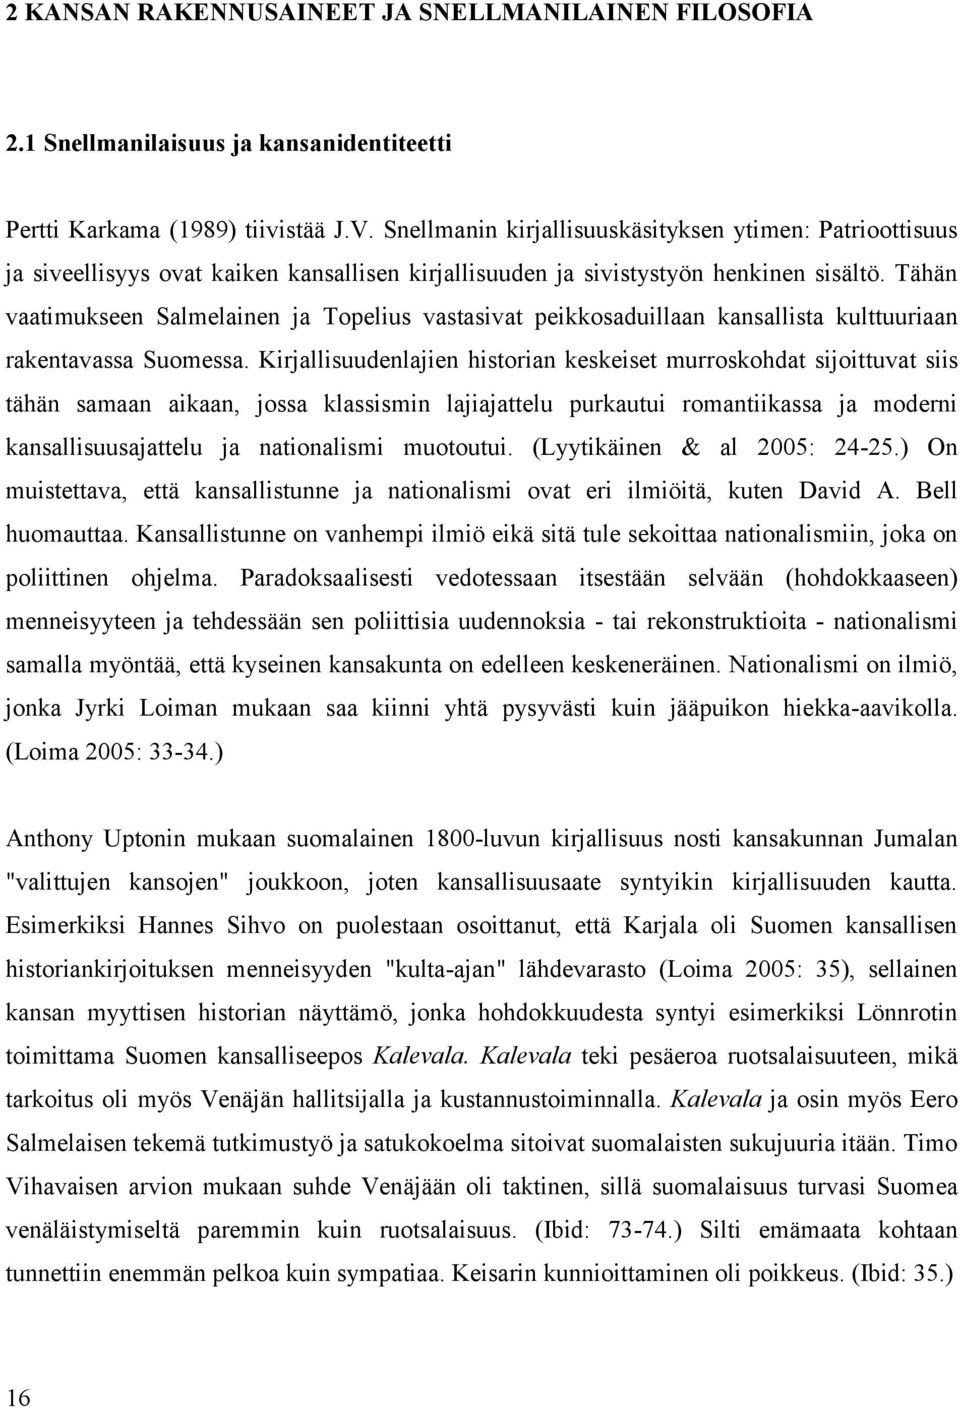 Tähän vaatimukseen Salmelainen ja Topelius vastasivat peikkosaduillaan kansallista kulttuuriaan rakentavassa Suomessa.